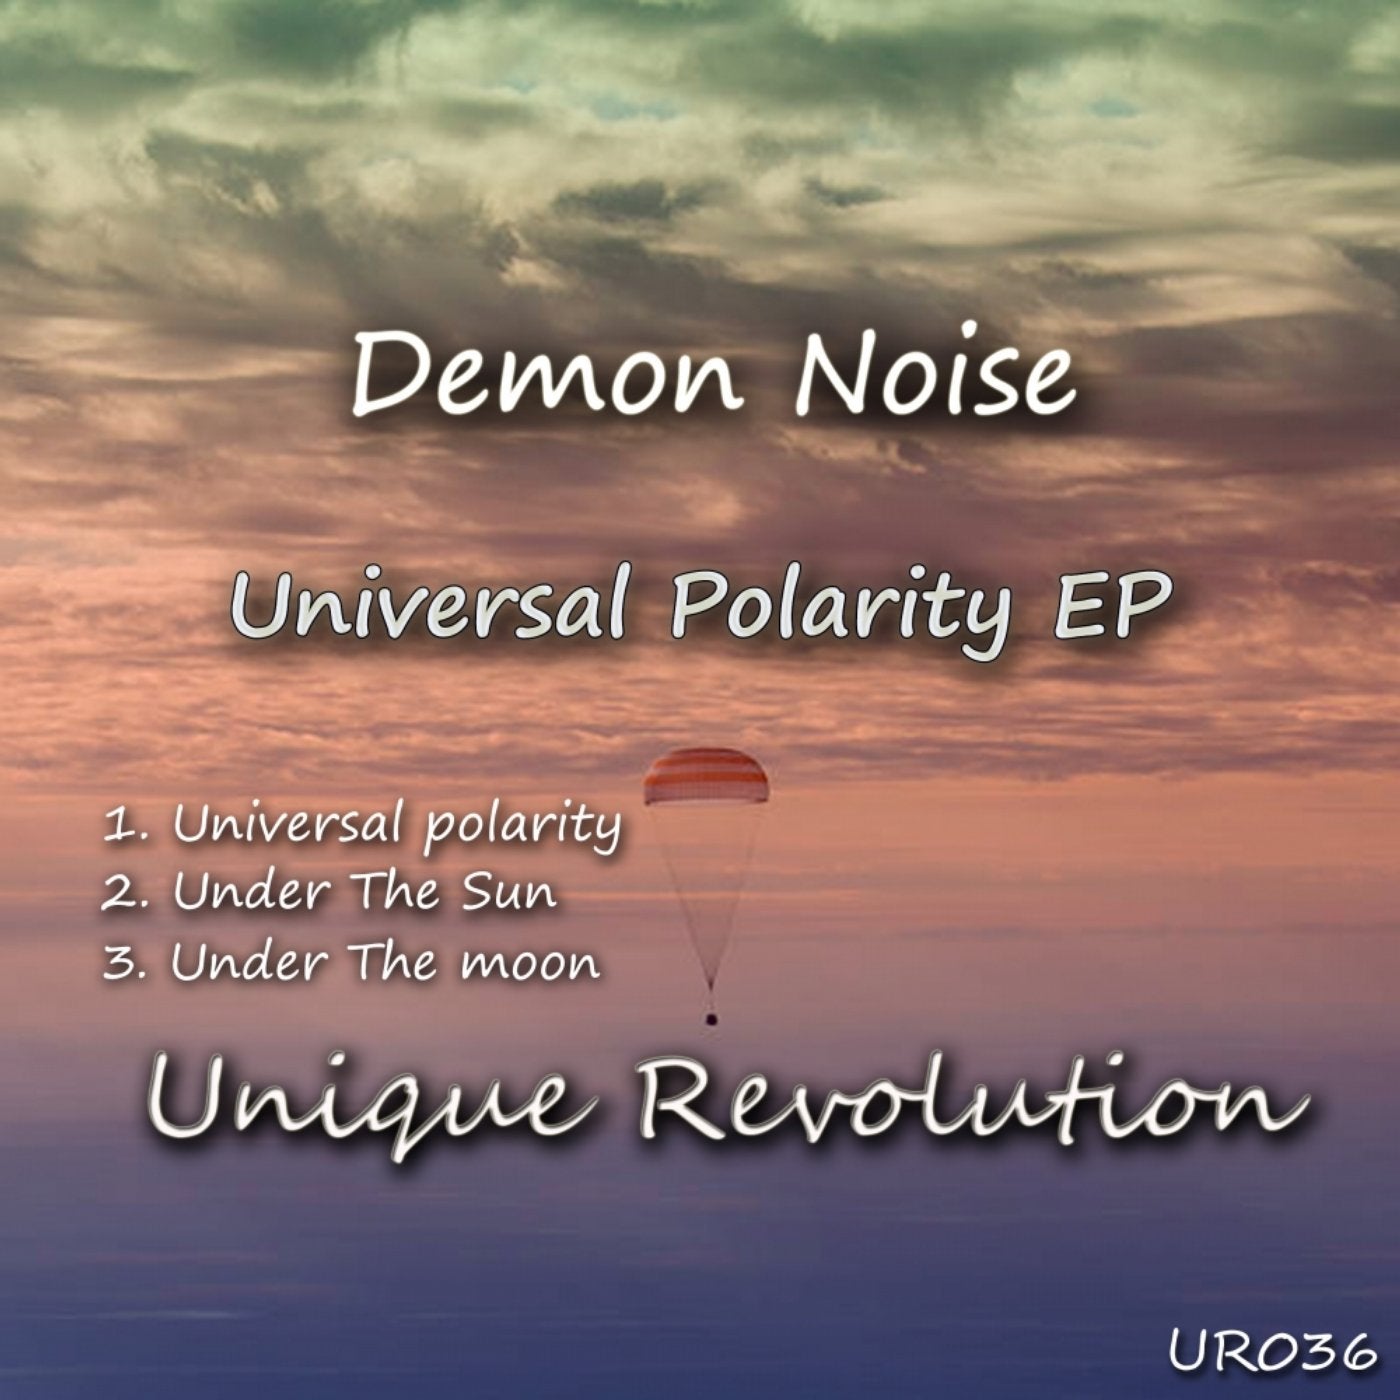 Universal Polarity EP